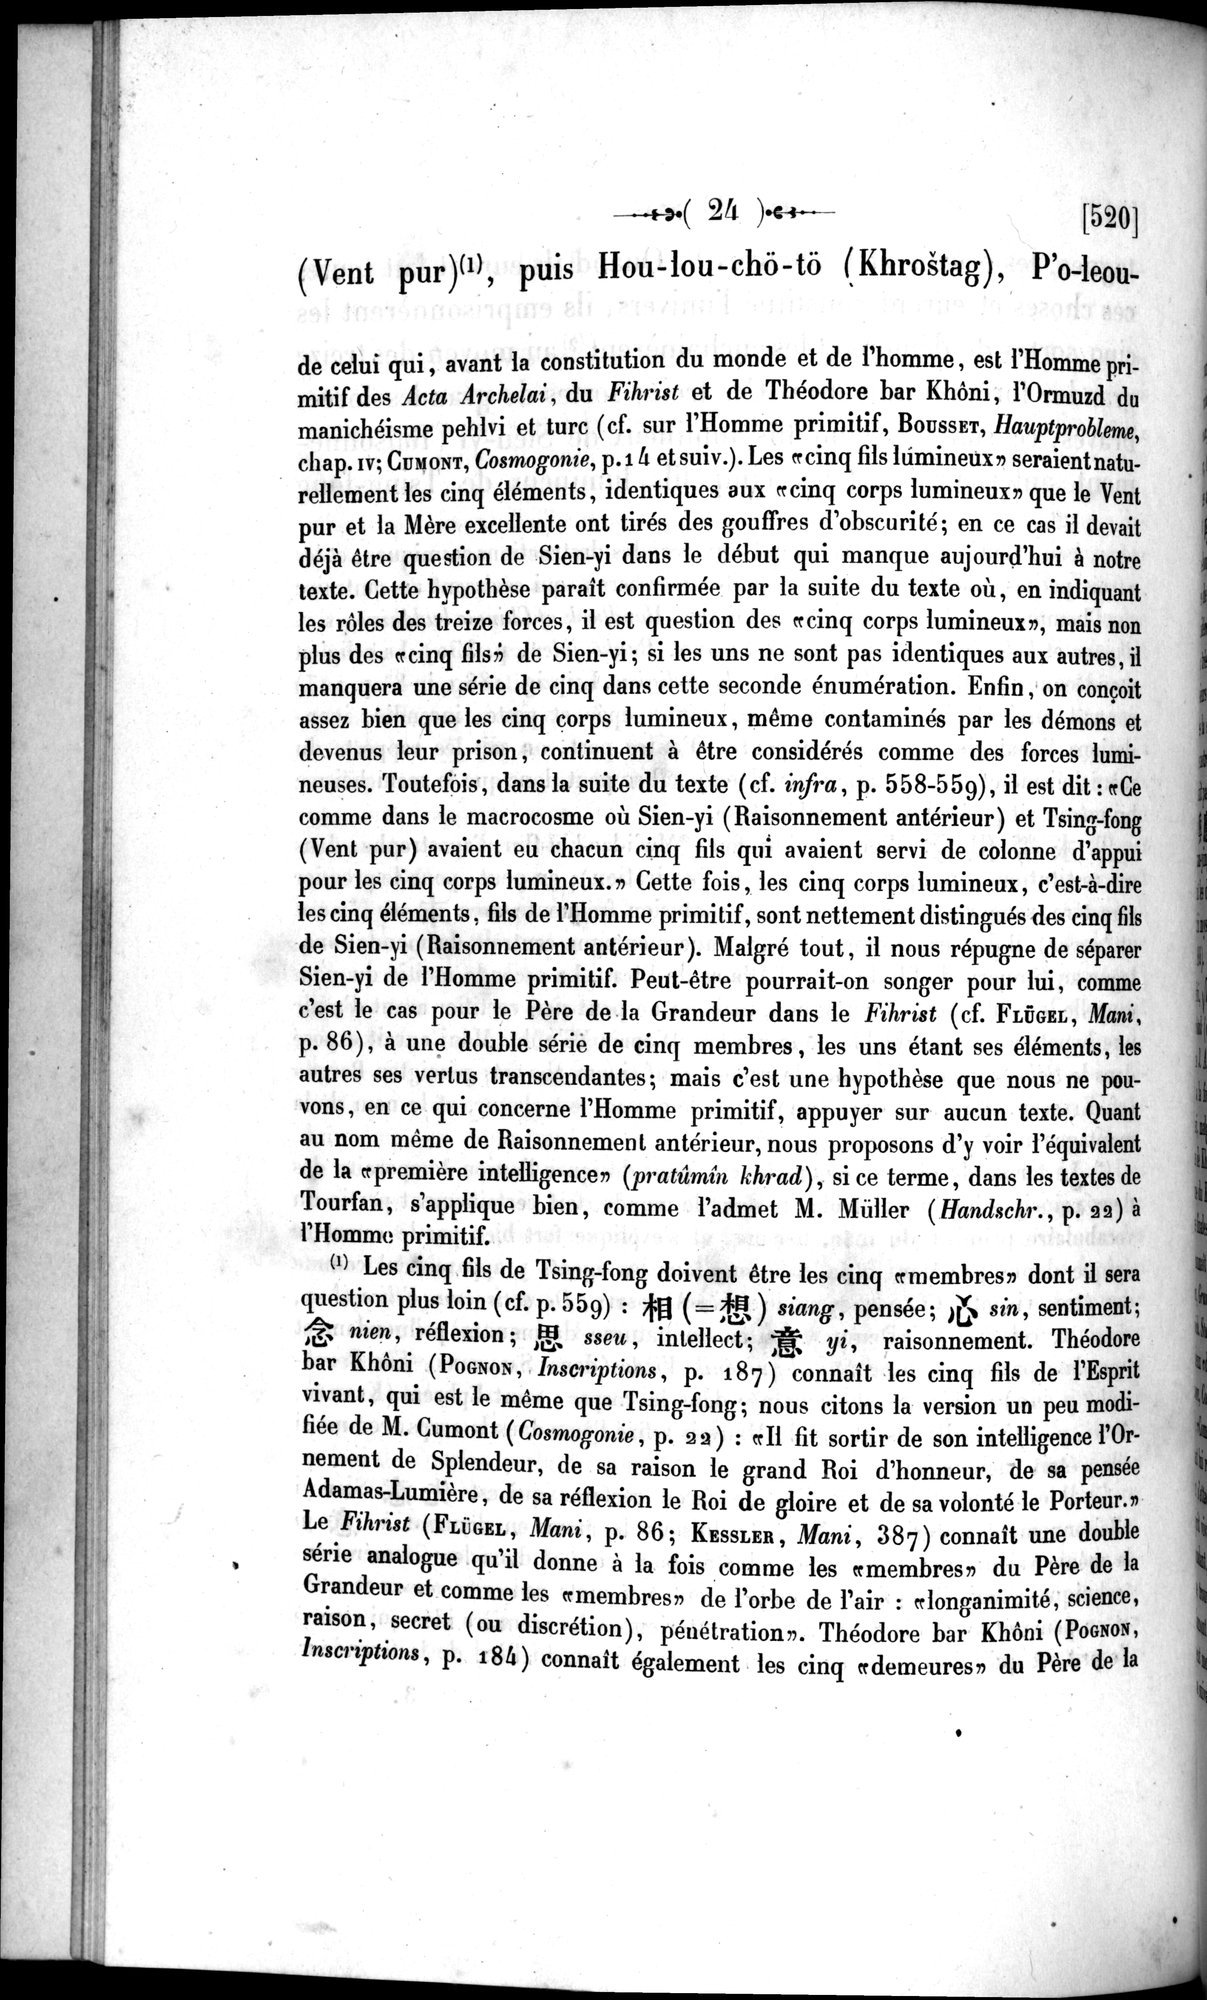 Un traité manichéen retrouvé en Chine : vol.1 / Page 34 (Grayscale High Resolution Image)